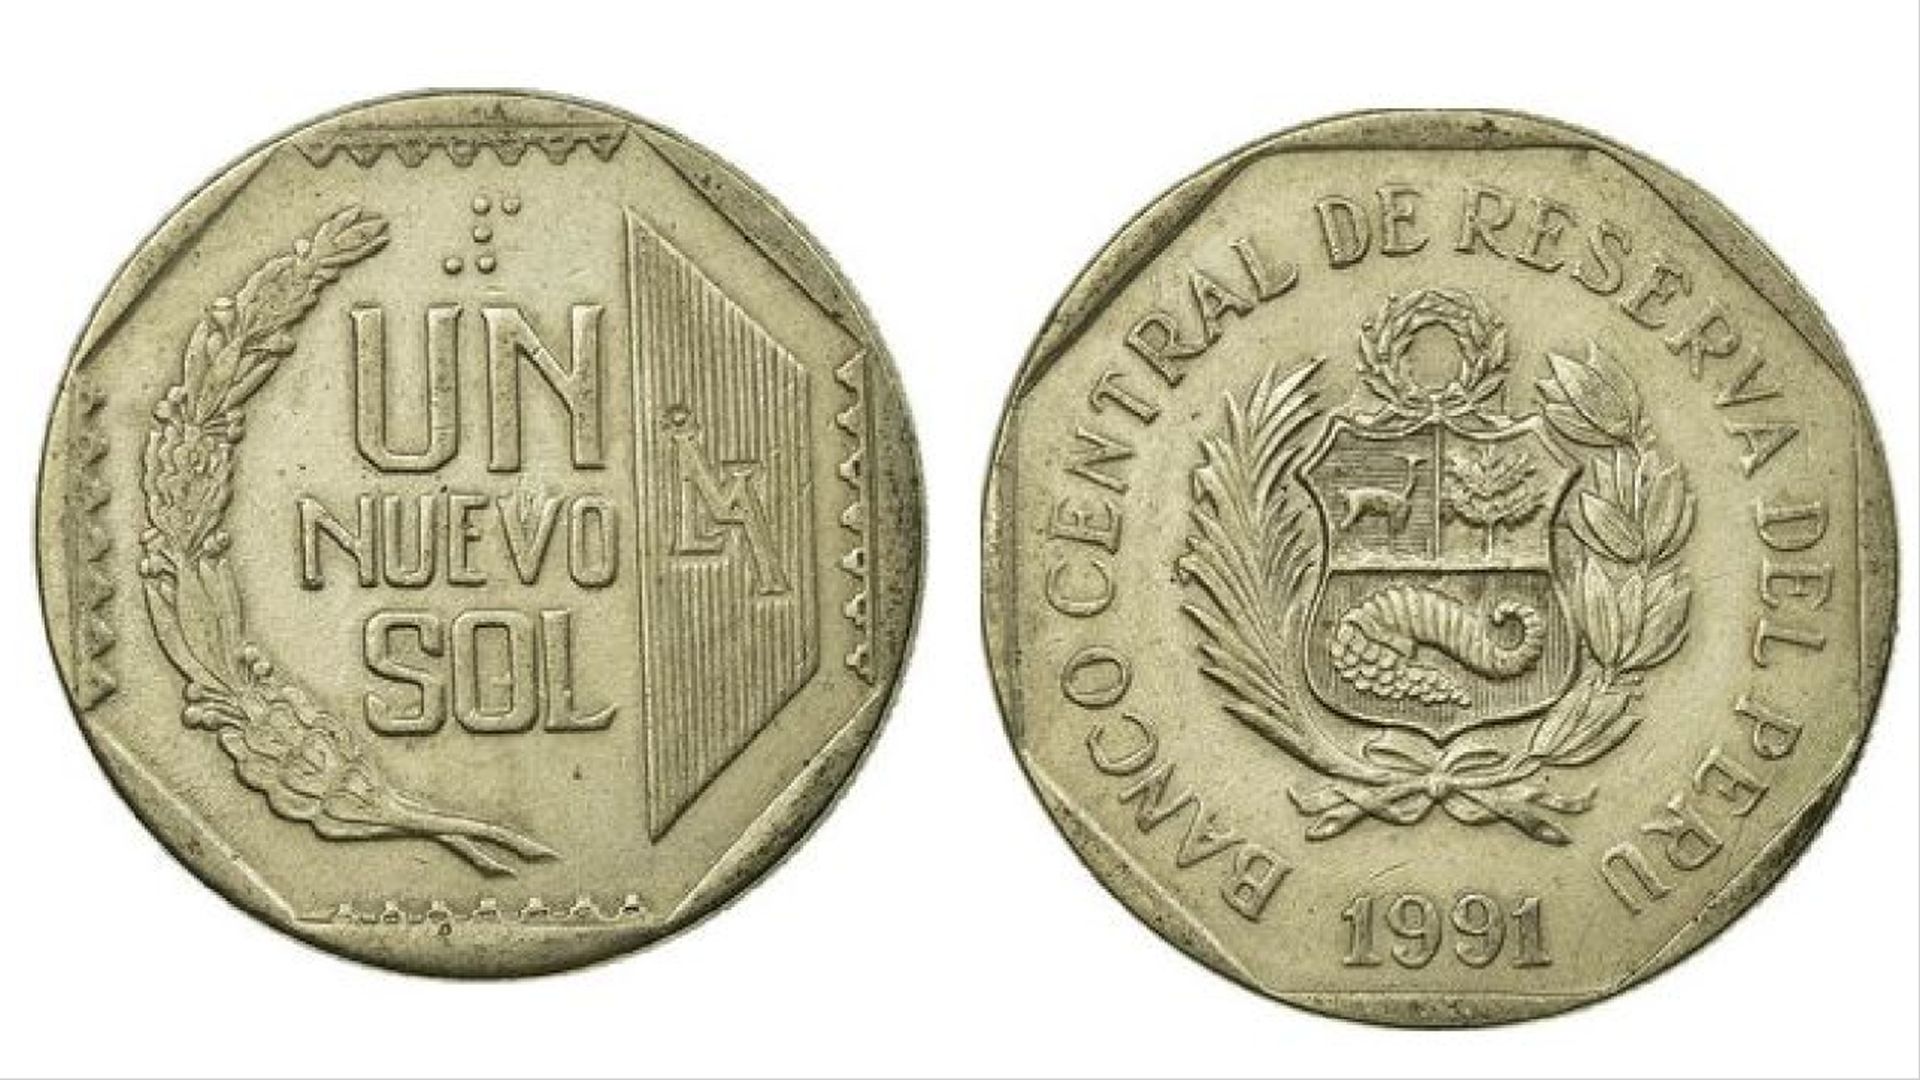 Monedas de 1 sol de 1991 ahora pueden llegar a costar 500 soles por estas razones